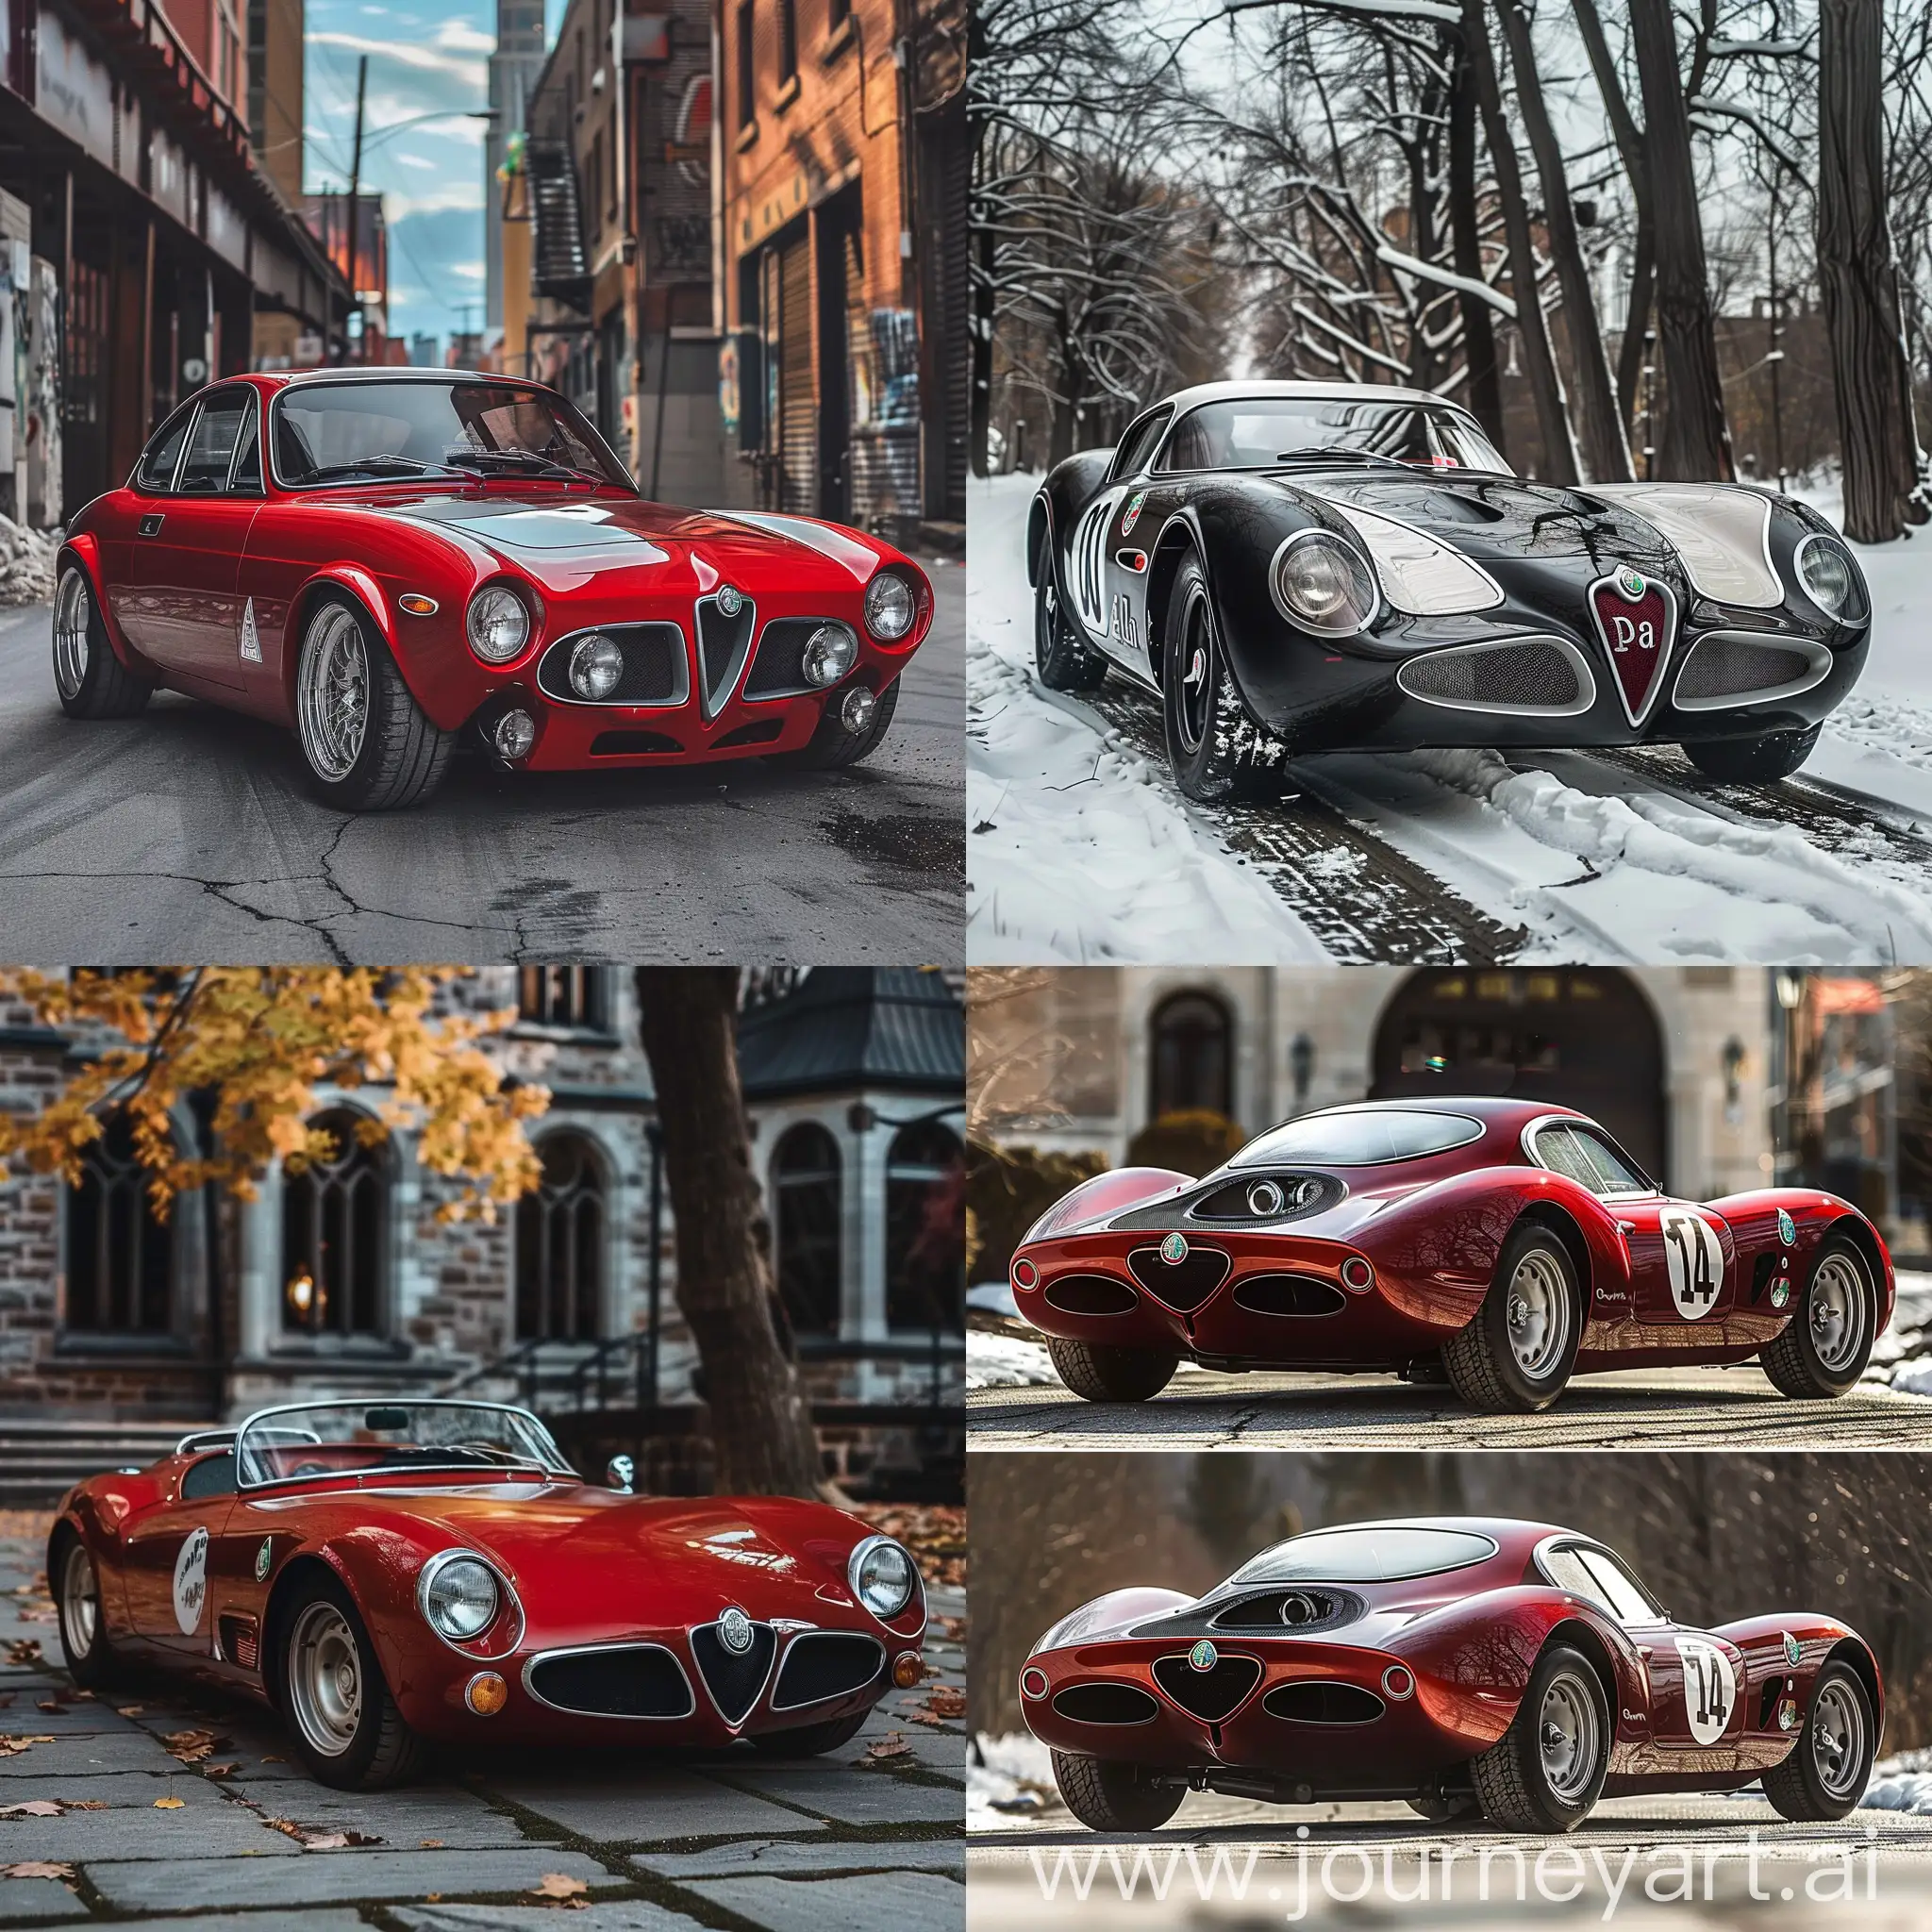 Luxury-Italian-Sports-Cars-Alfa-Romeo-Bat-5-Montreal-Maserati-V6-AR-11-No-27098